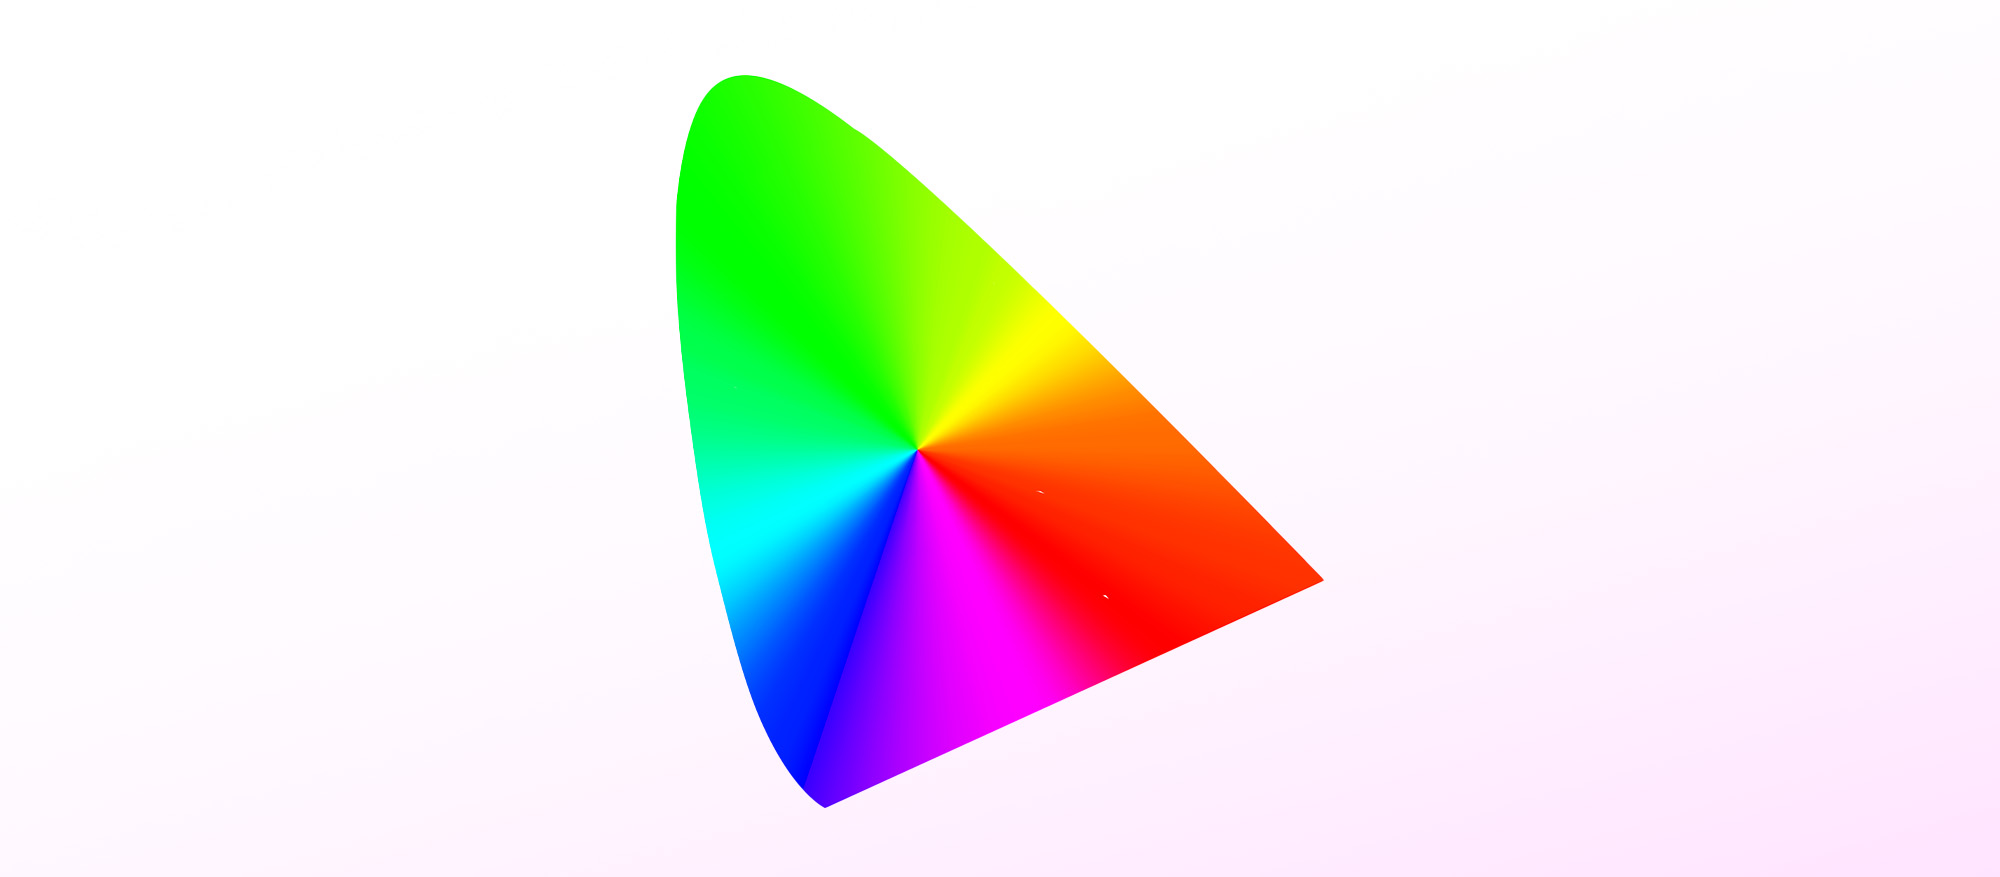 Ikona pro profily ICC vychází ze standardního diagramu chromatičnosti CIE a slouží jako projekční bod pro barevné prostory RGB.